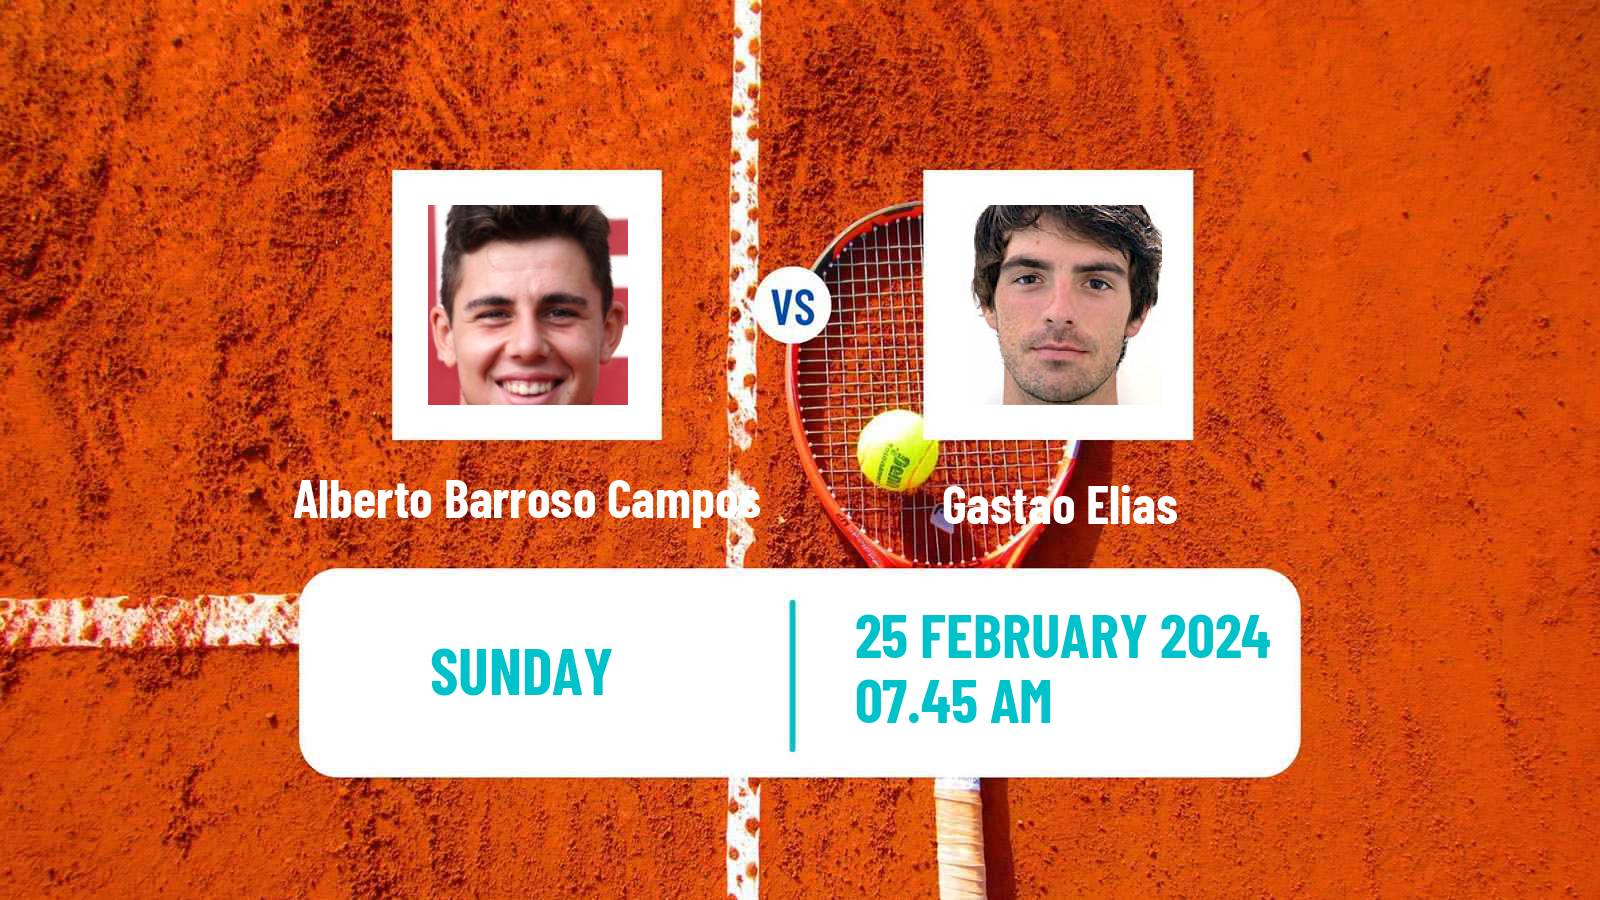 Tennis Tenerife 3 Challenger Men Alberto Barroso Campos - Gastao Elias